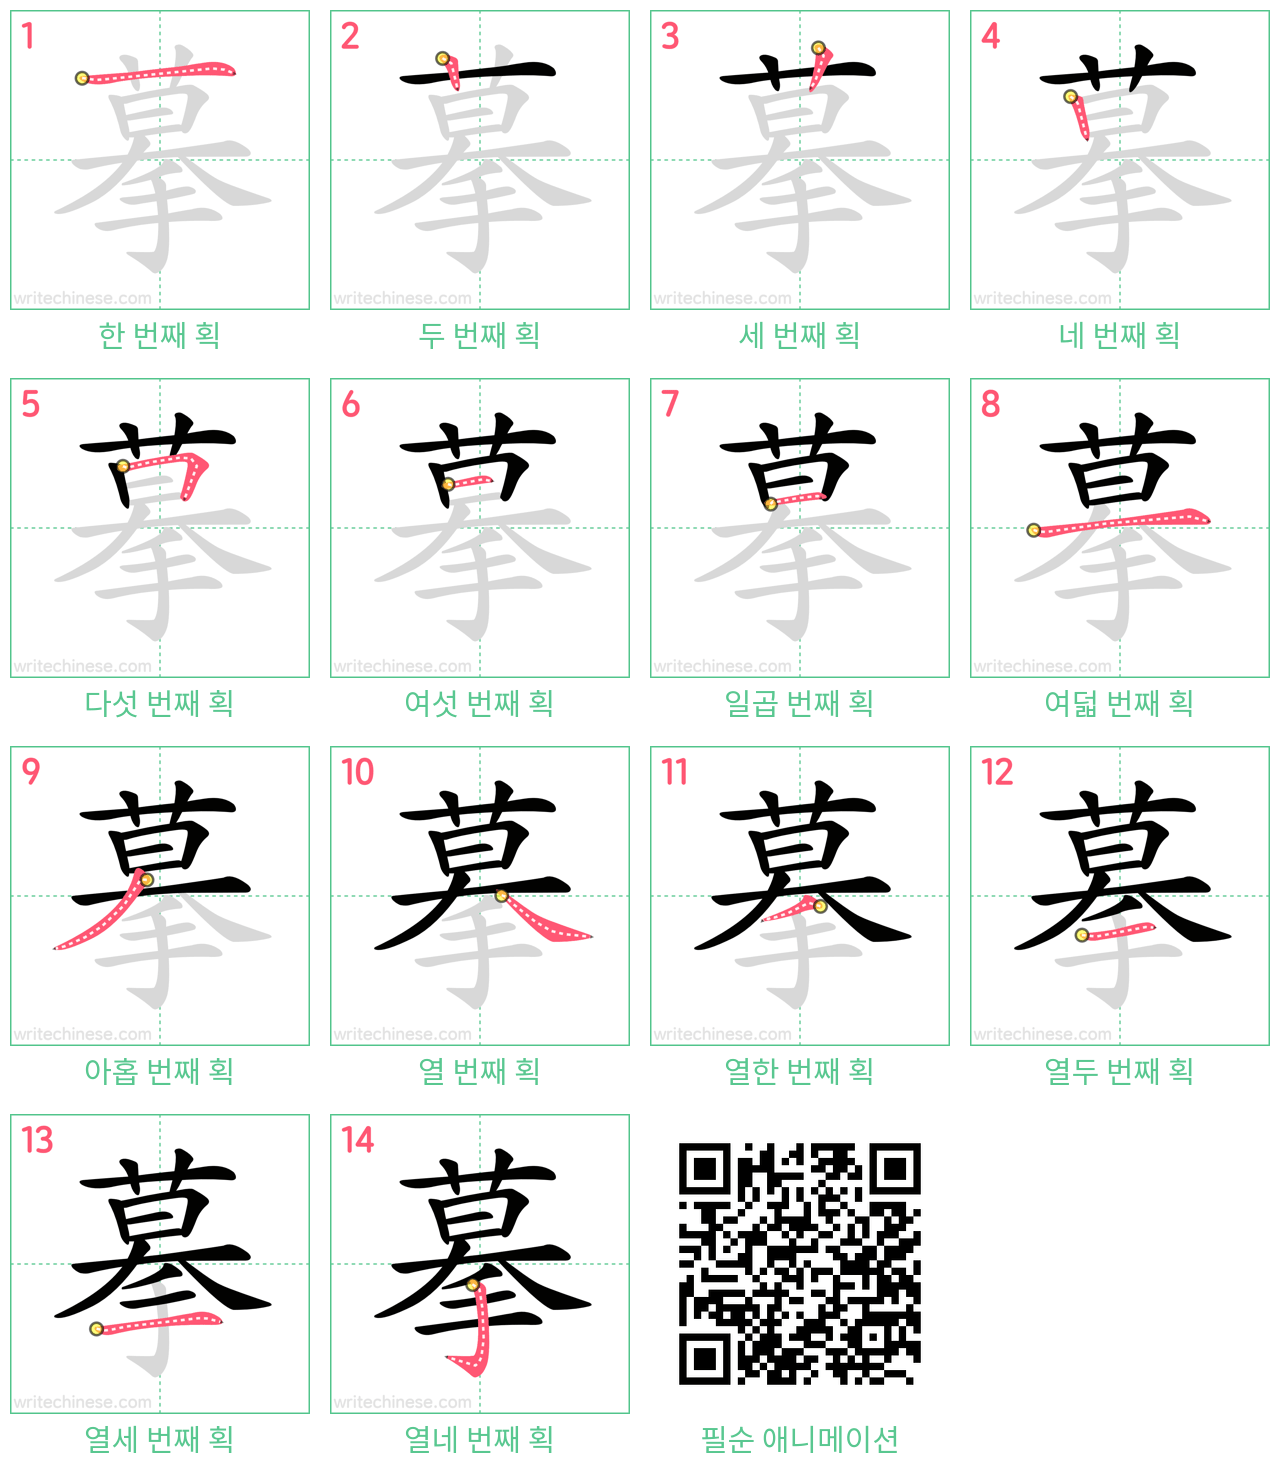 摹 step-by-step stroke order diagrams